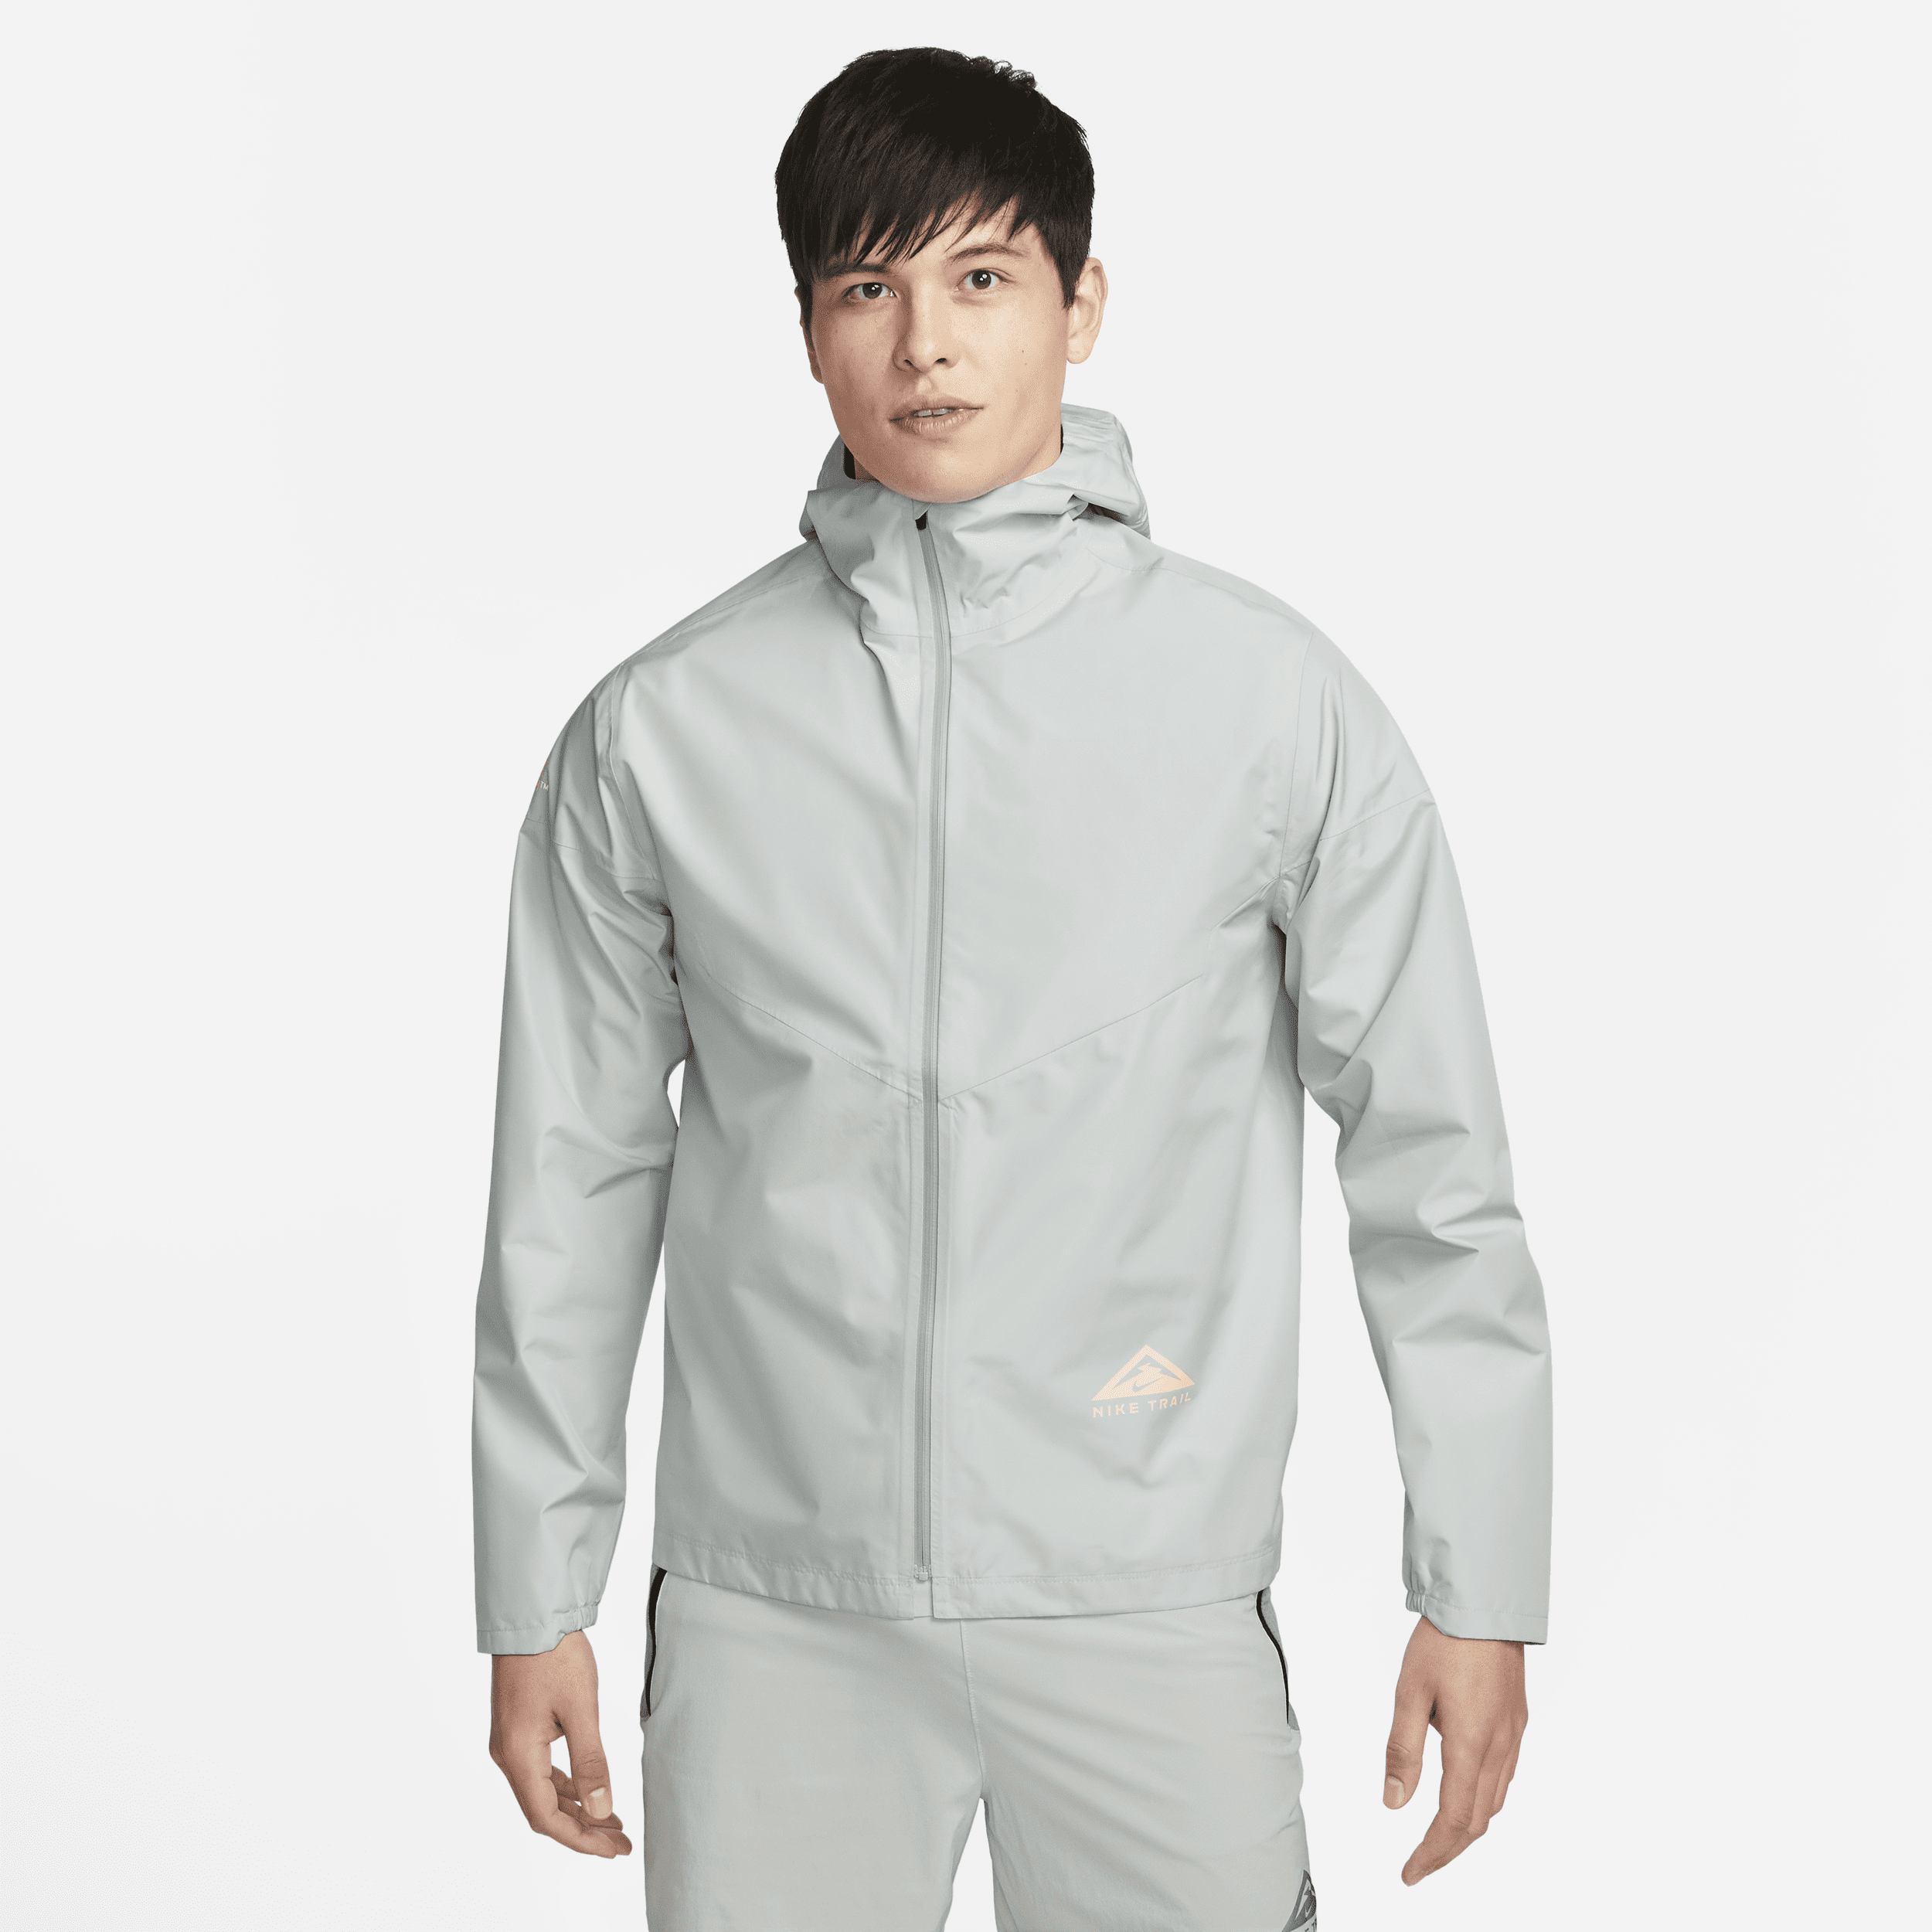 Nike Men's Gore-tex Infiniumâ¢ Trail Running Jacket In Grey